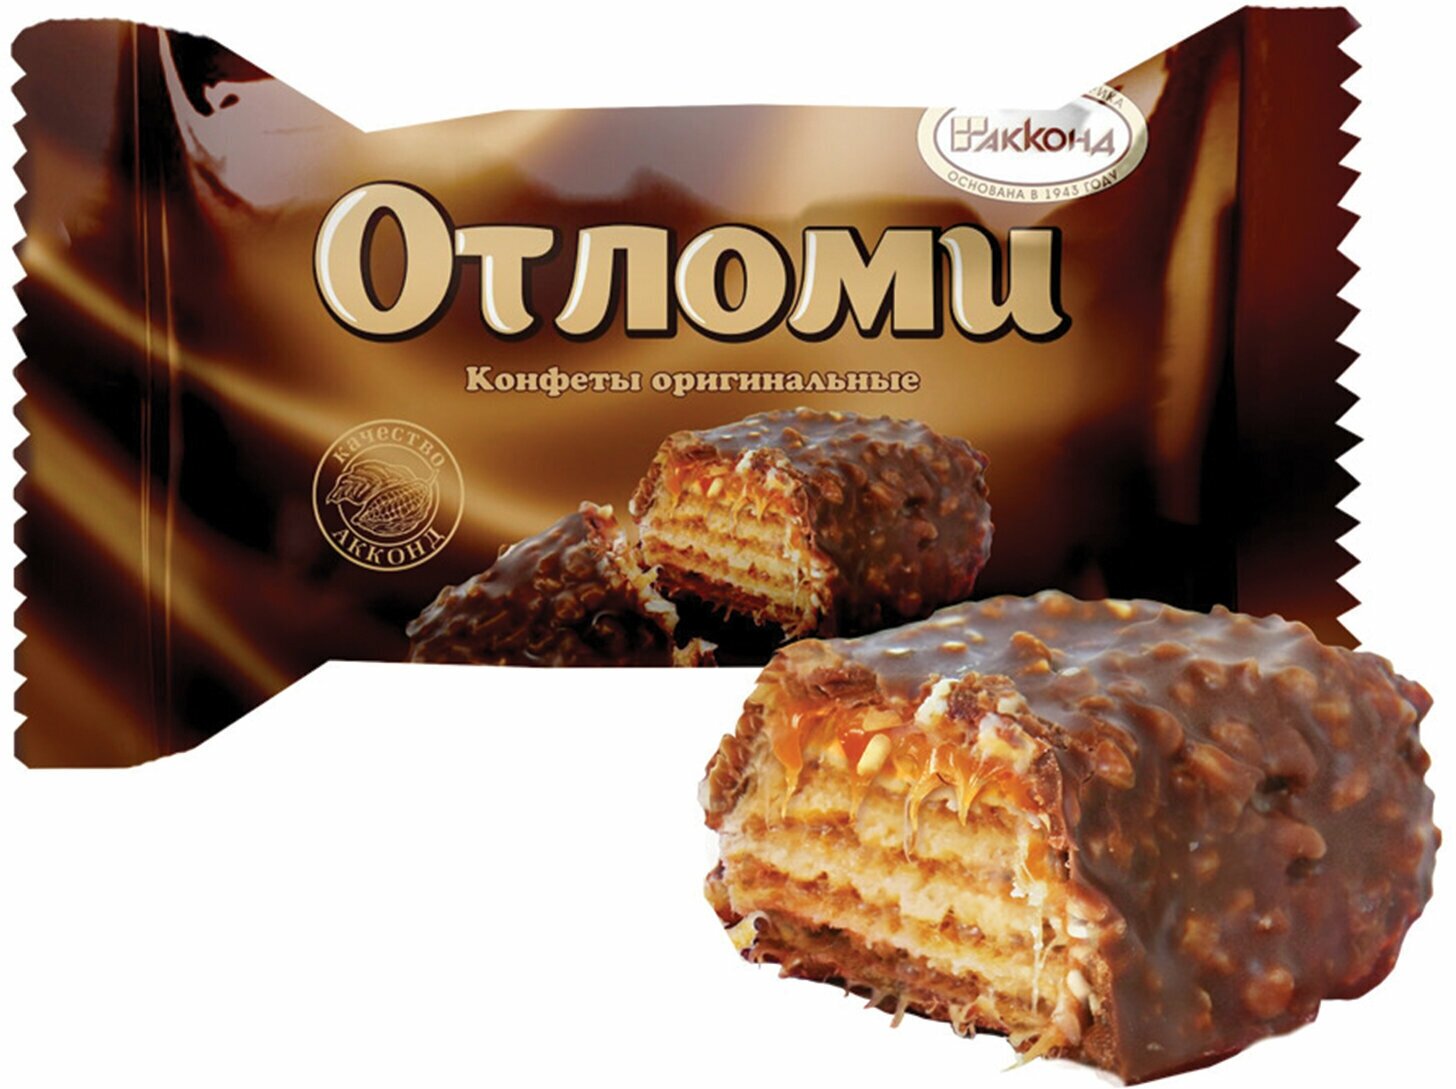 Конфеты шоколадные акконд "Отломи" вафельные с молочной карамелью, 360 г, пакет